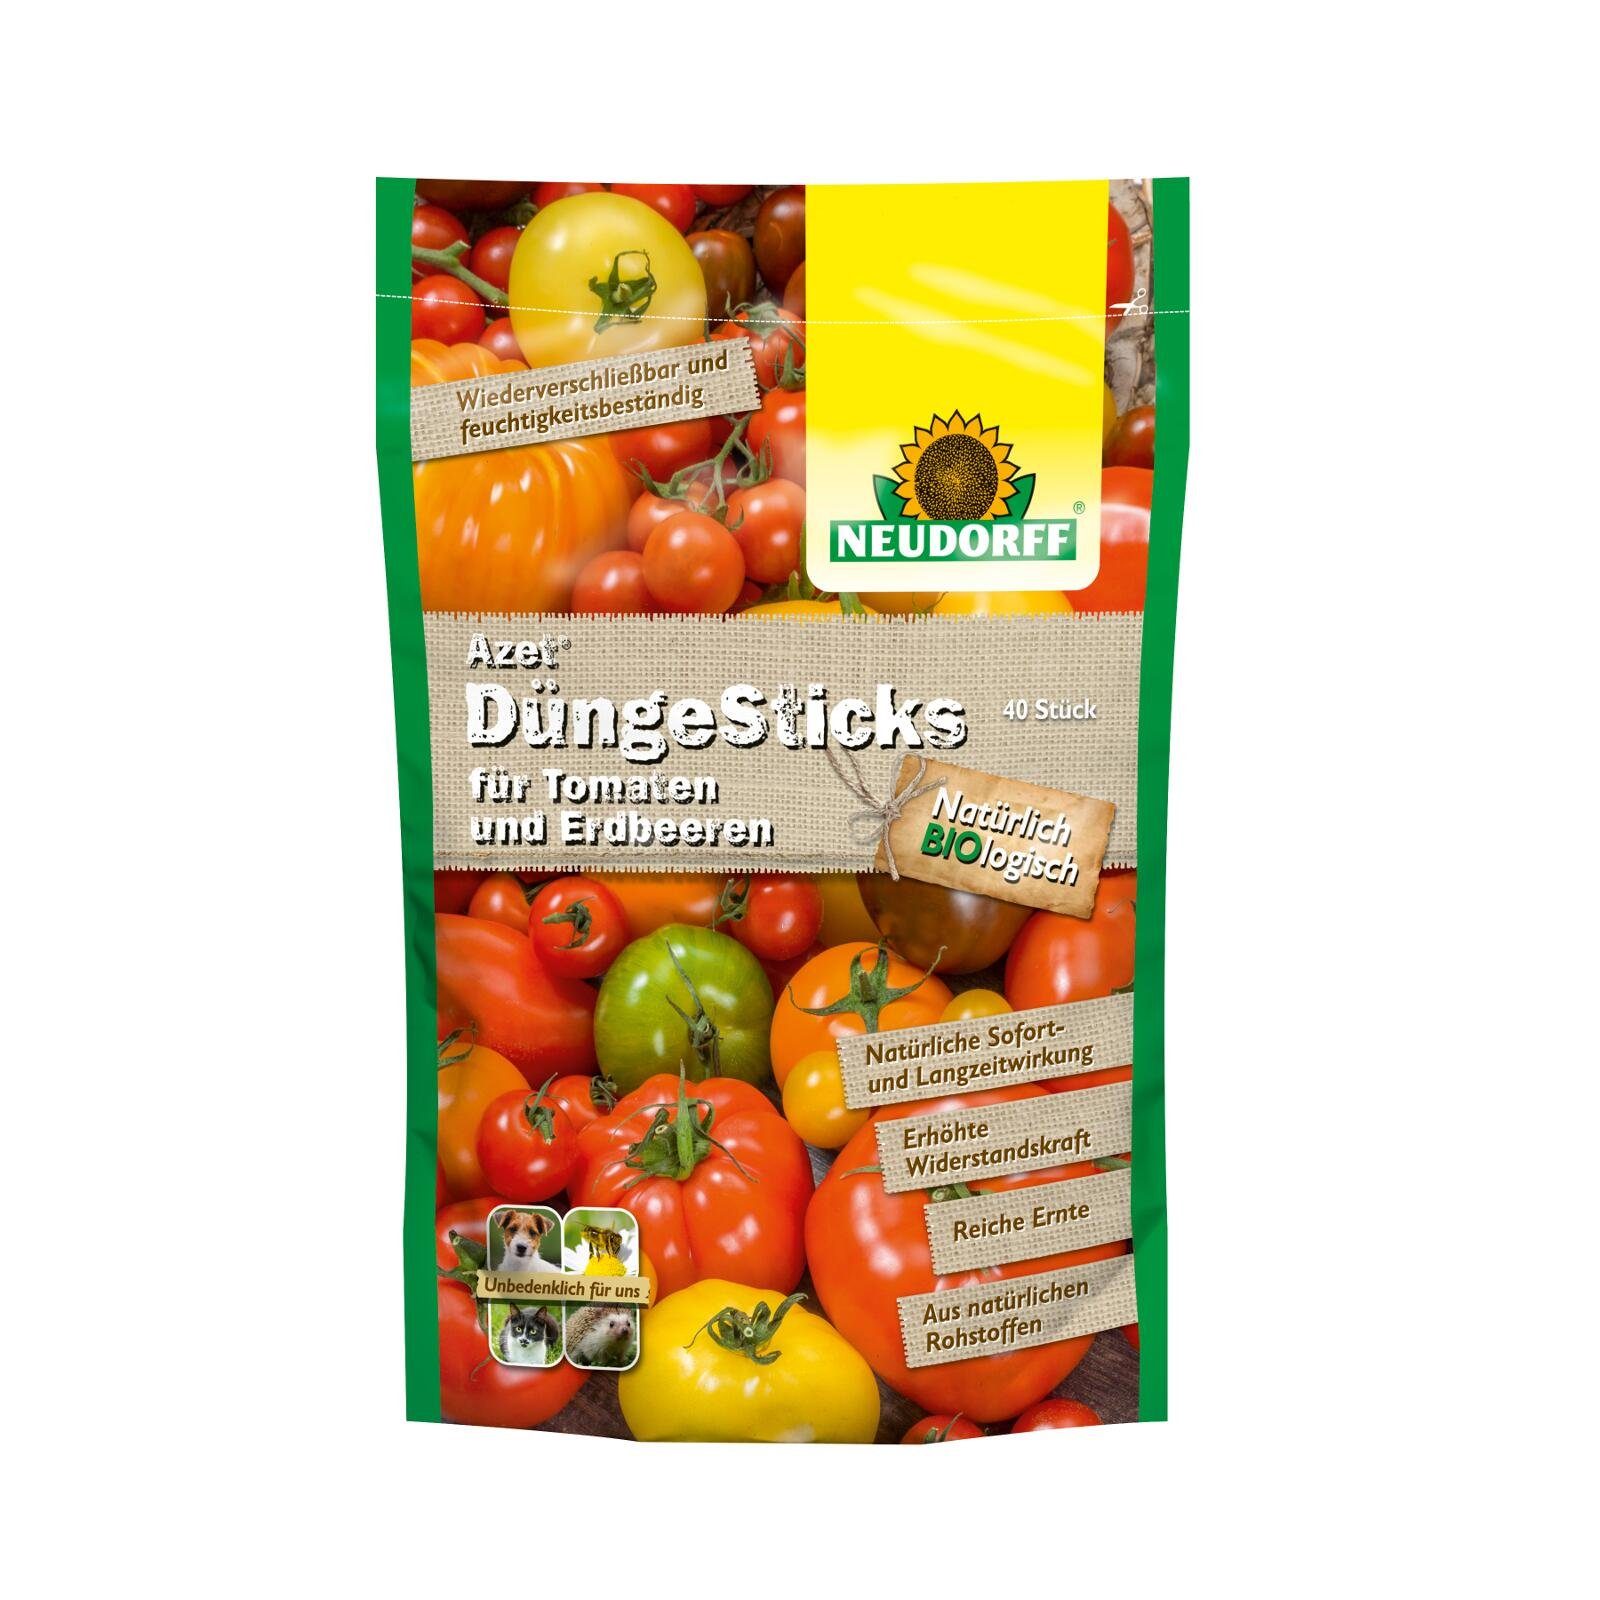 Neudorff Tomatendünger Azet DüngeSticks für Tomaten und Erdbeeren - 40 Stück